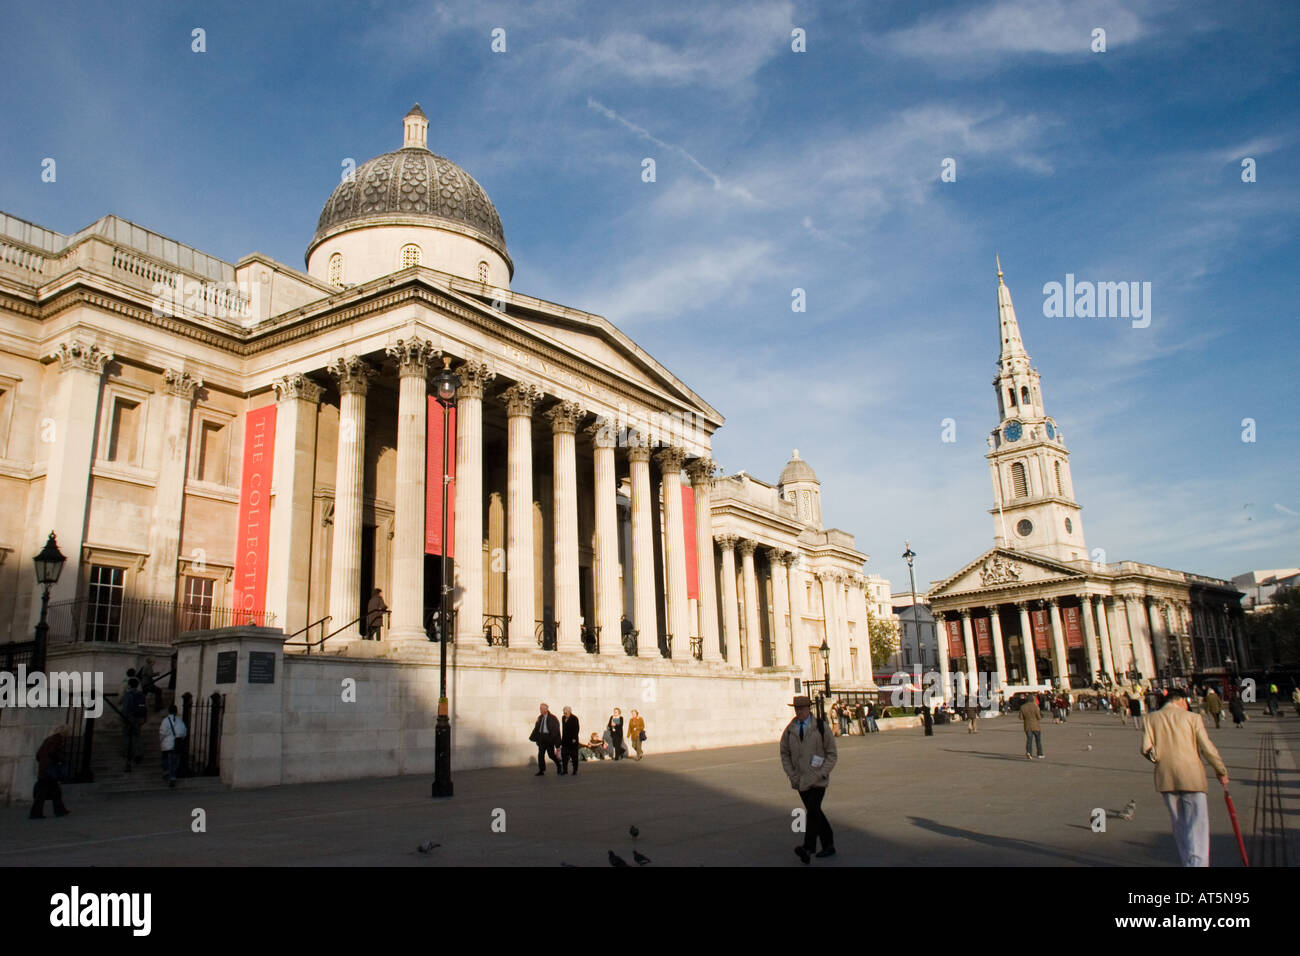 La National Gallery et Saint Martin's Church dans le domaine à Trafalgar Square Londres GB Royaume-Uni sur une journée ensoleillée Banque D'Images